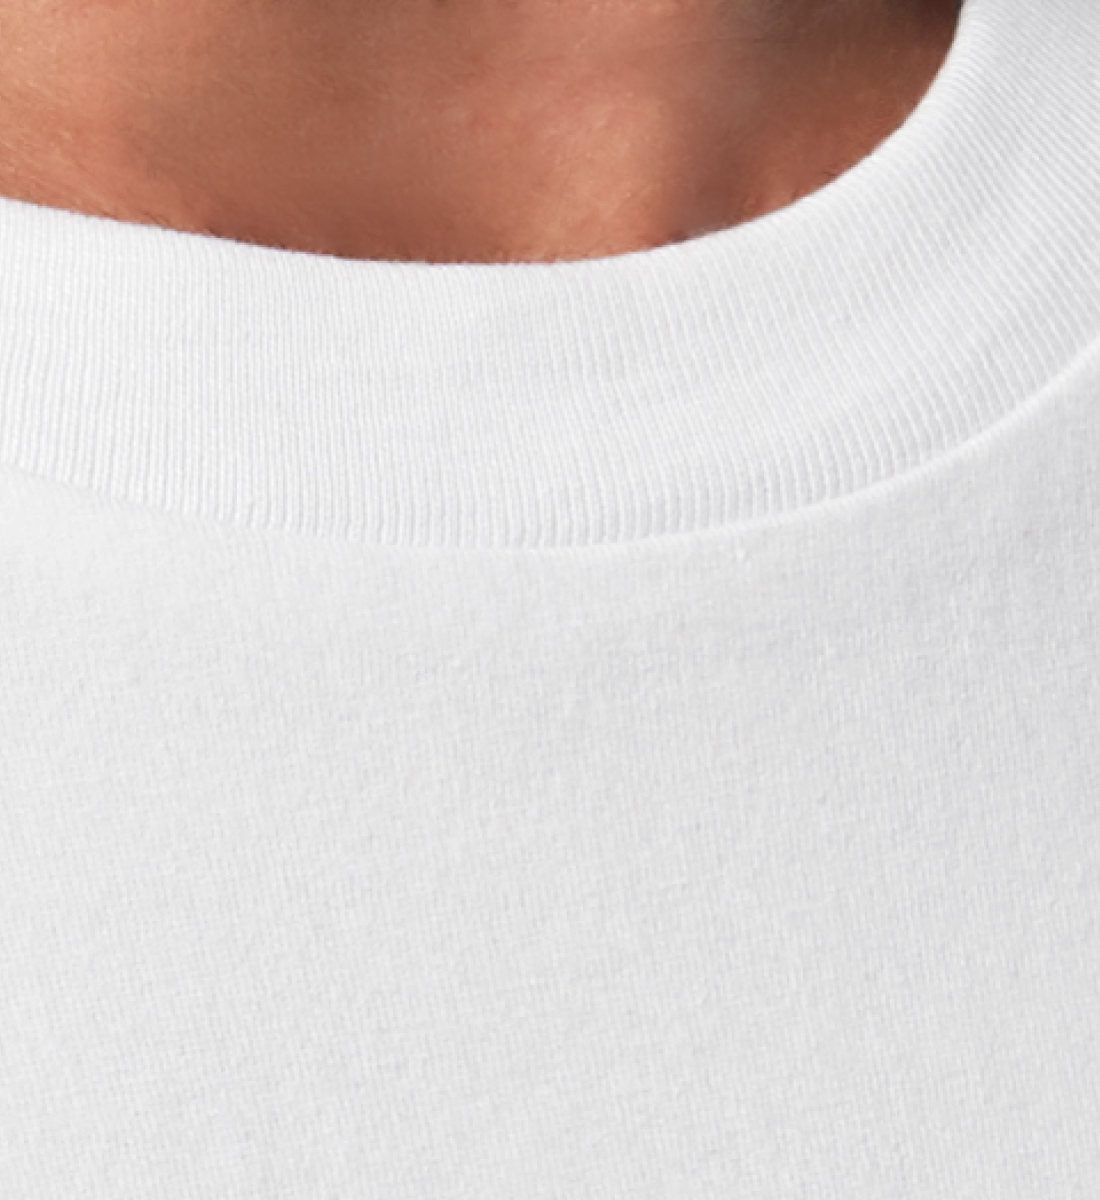 Weißes T-Shirt Unisex Relaxed Fit für Frauen und Männer bedruckt mit dem Design der Roger Rockawoo Kollektion Midnight is where the day begins